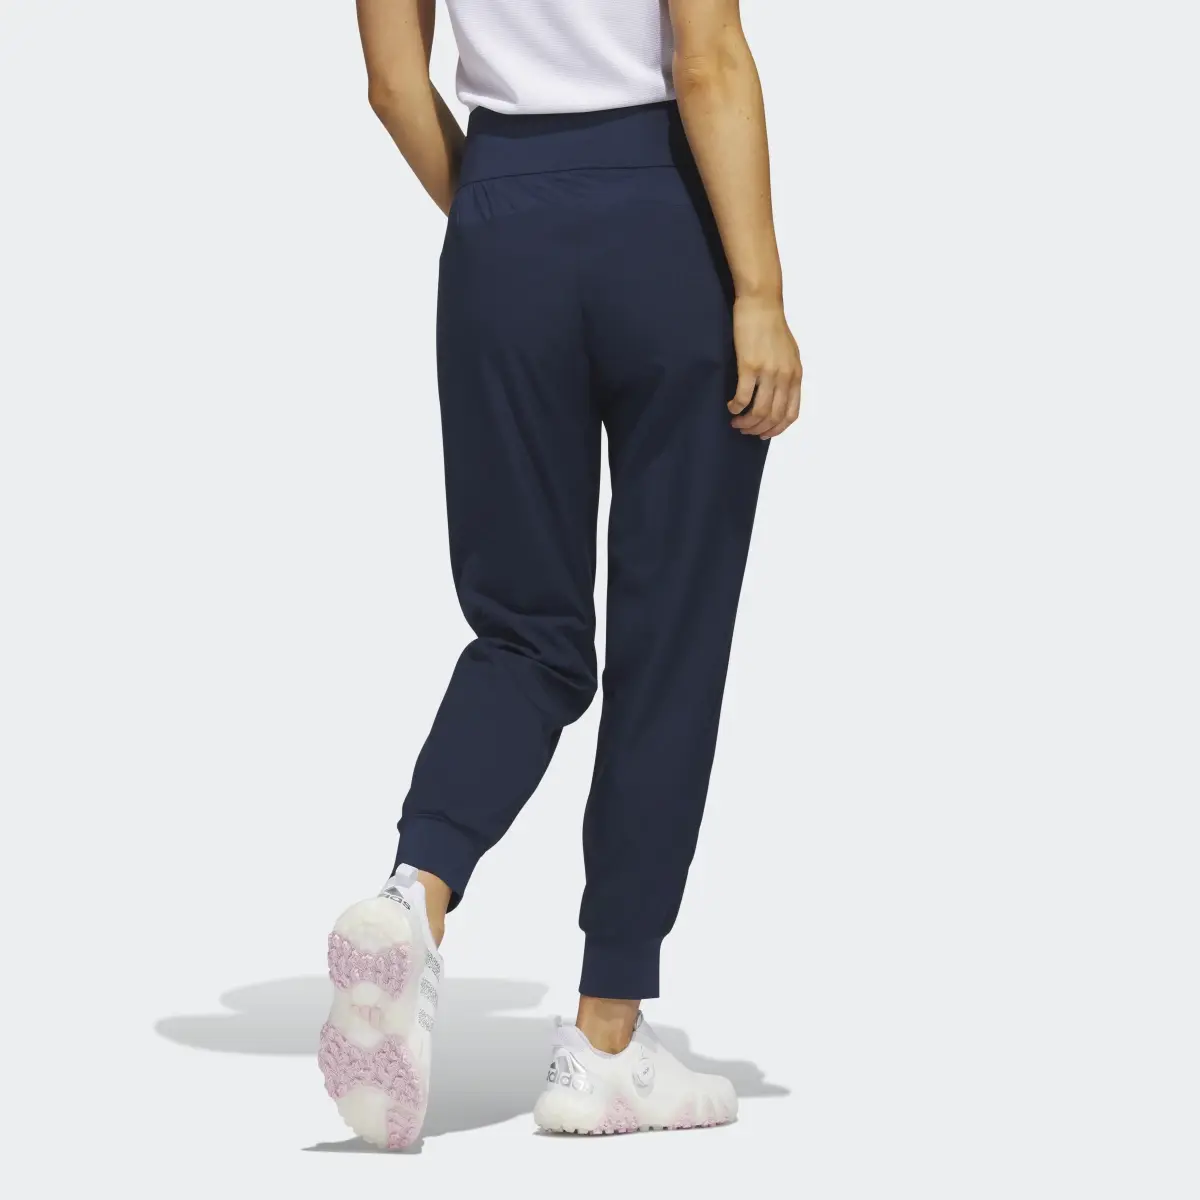 Adidas Essentials Jogger Pants. 2